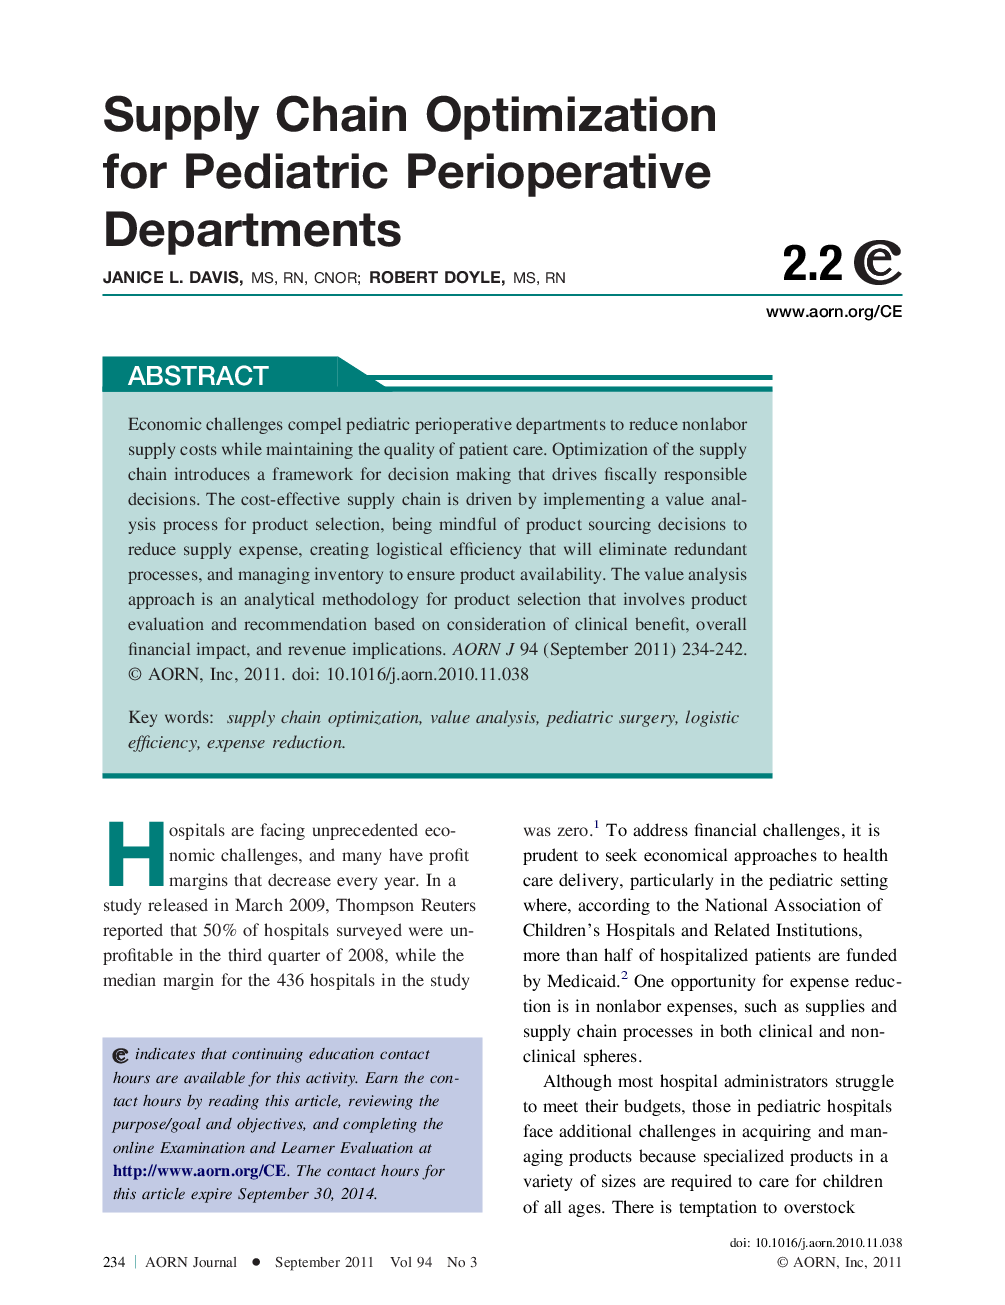 Supply Chain Optimization for Pediatric Perioperative Departments